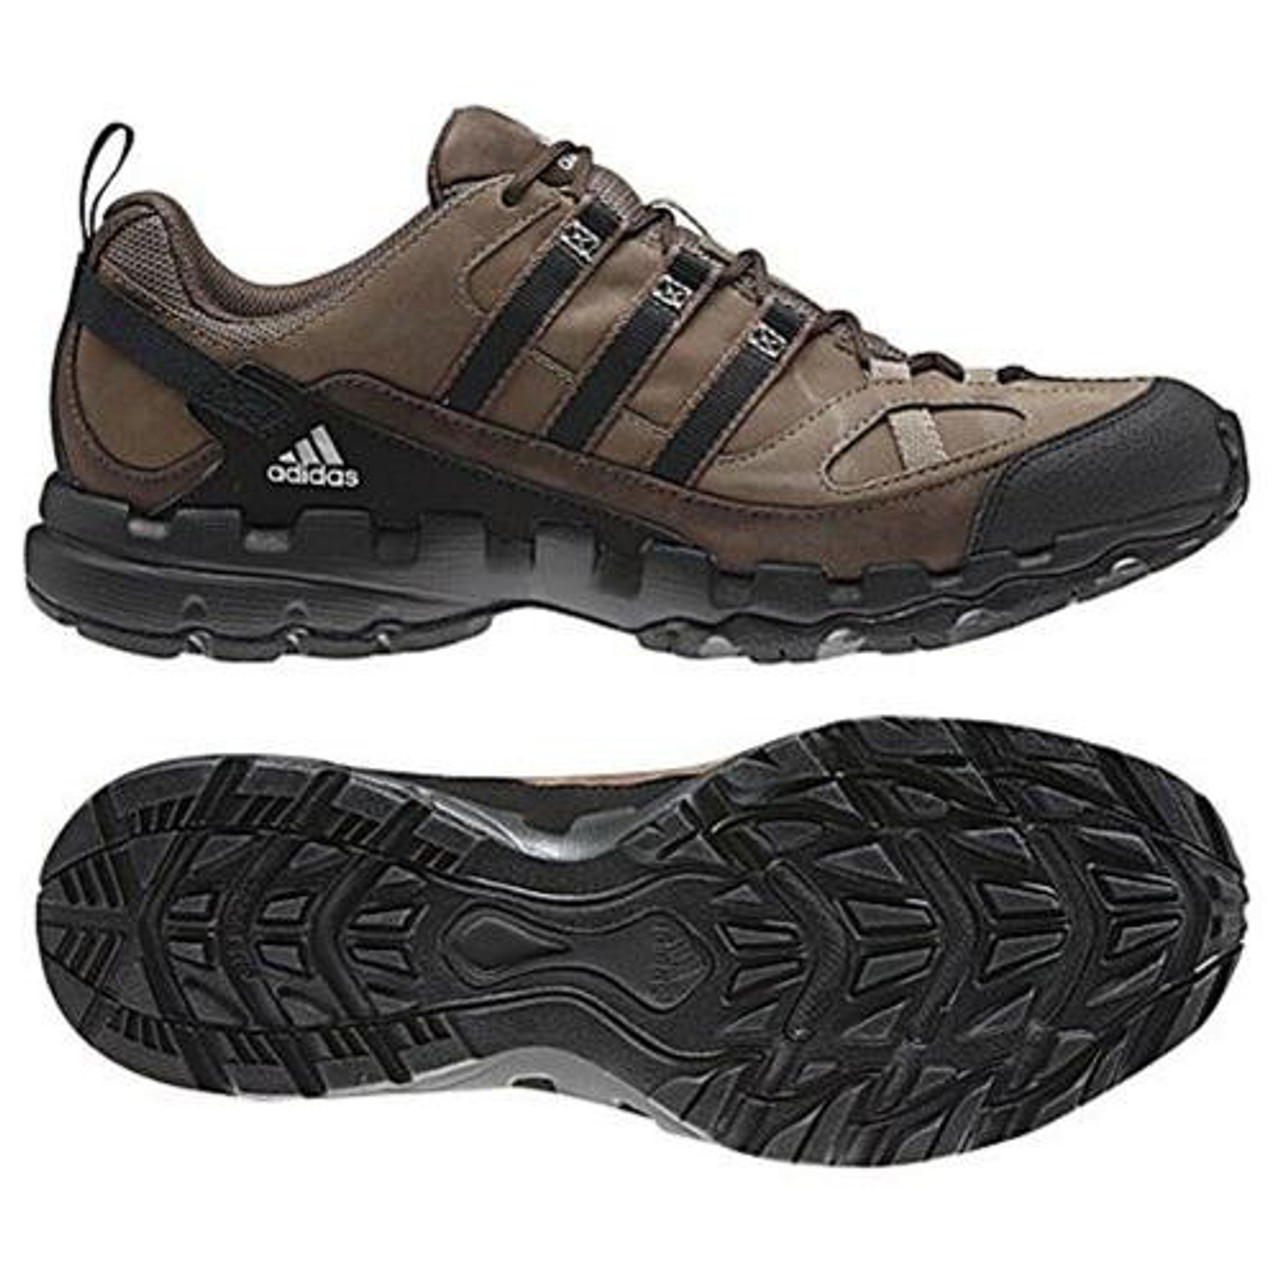 Adidas AX 1 Mens Hiking Shoes - Espresso/Black | Discount Adidas Men's & More - Shoolu.com | Shoolu.com